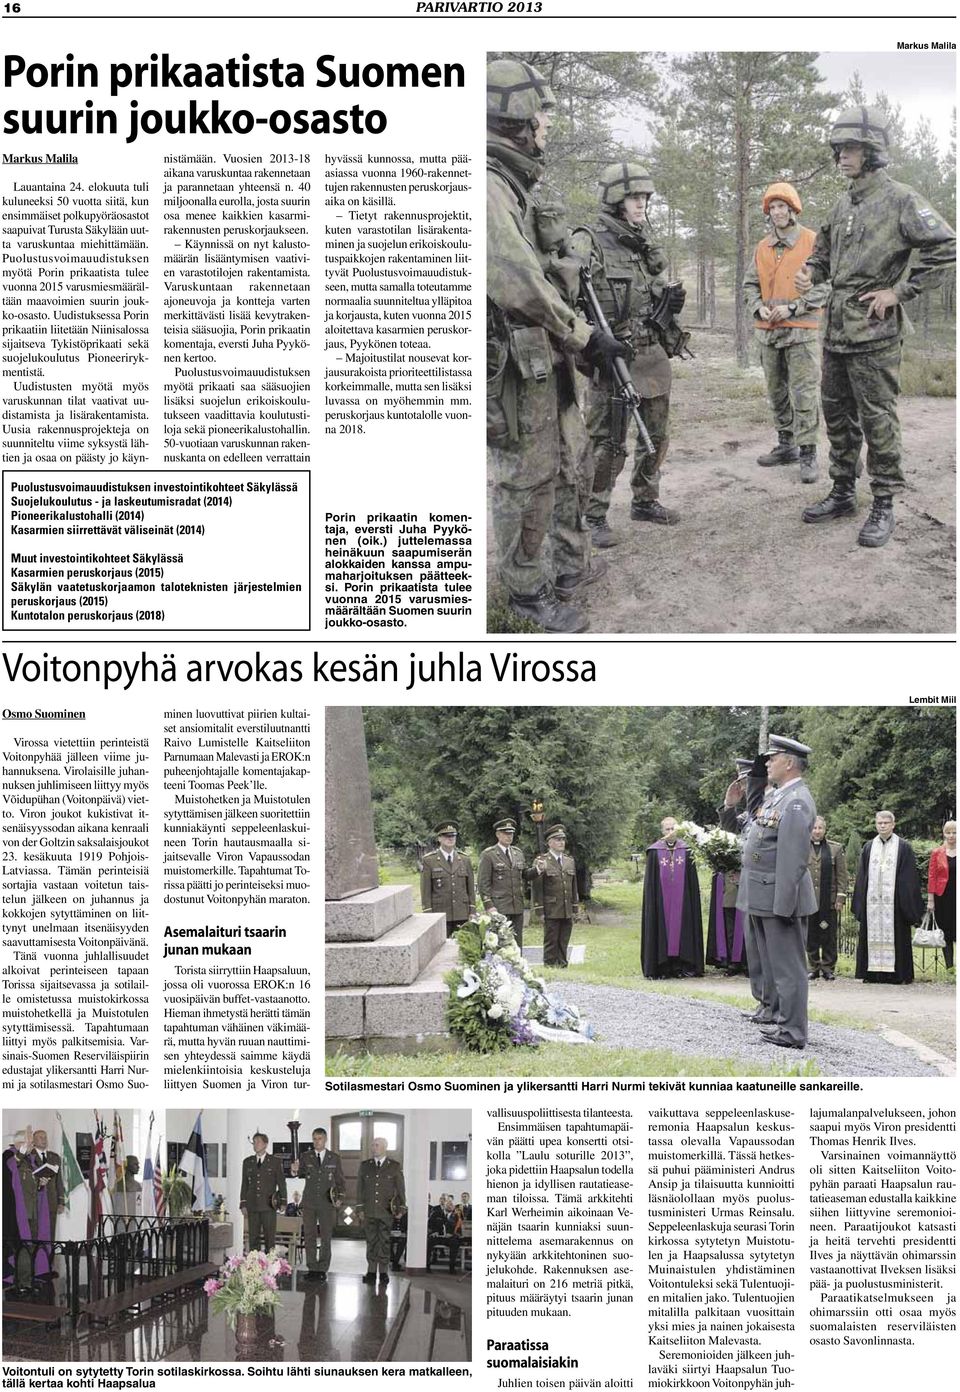 Puolustusvoimauudistuksen myötä Porin prikaatista tulee vuonna 2015 varusmiesmäärältään maavoimien suurin joukko-osasto.